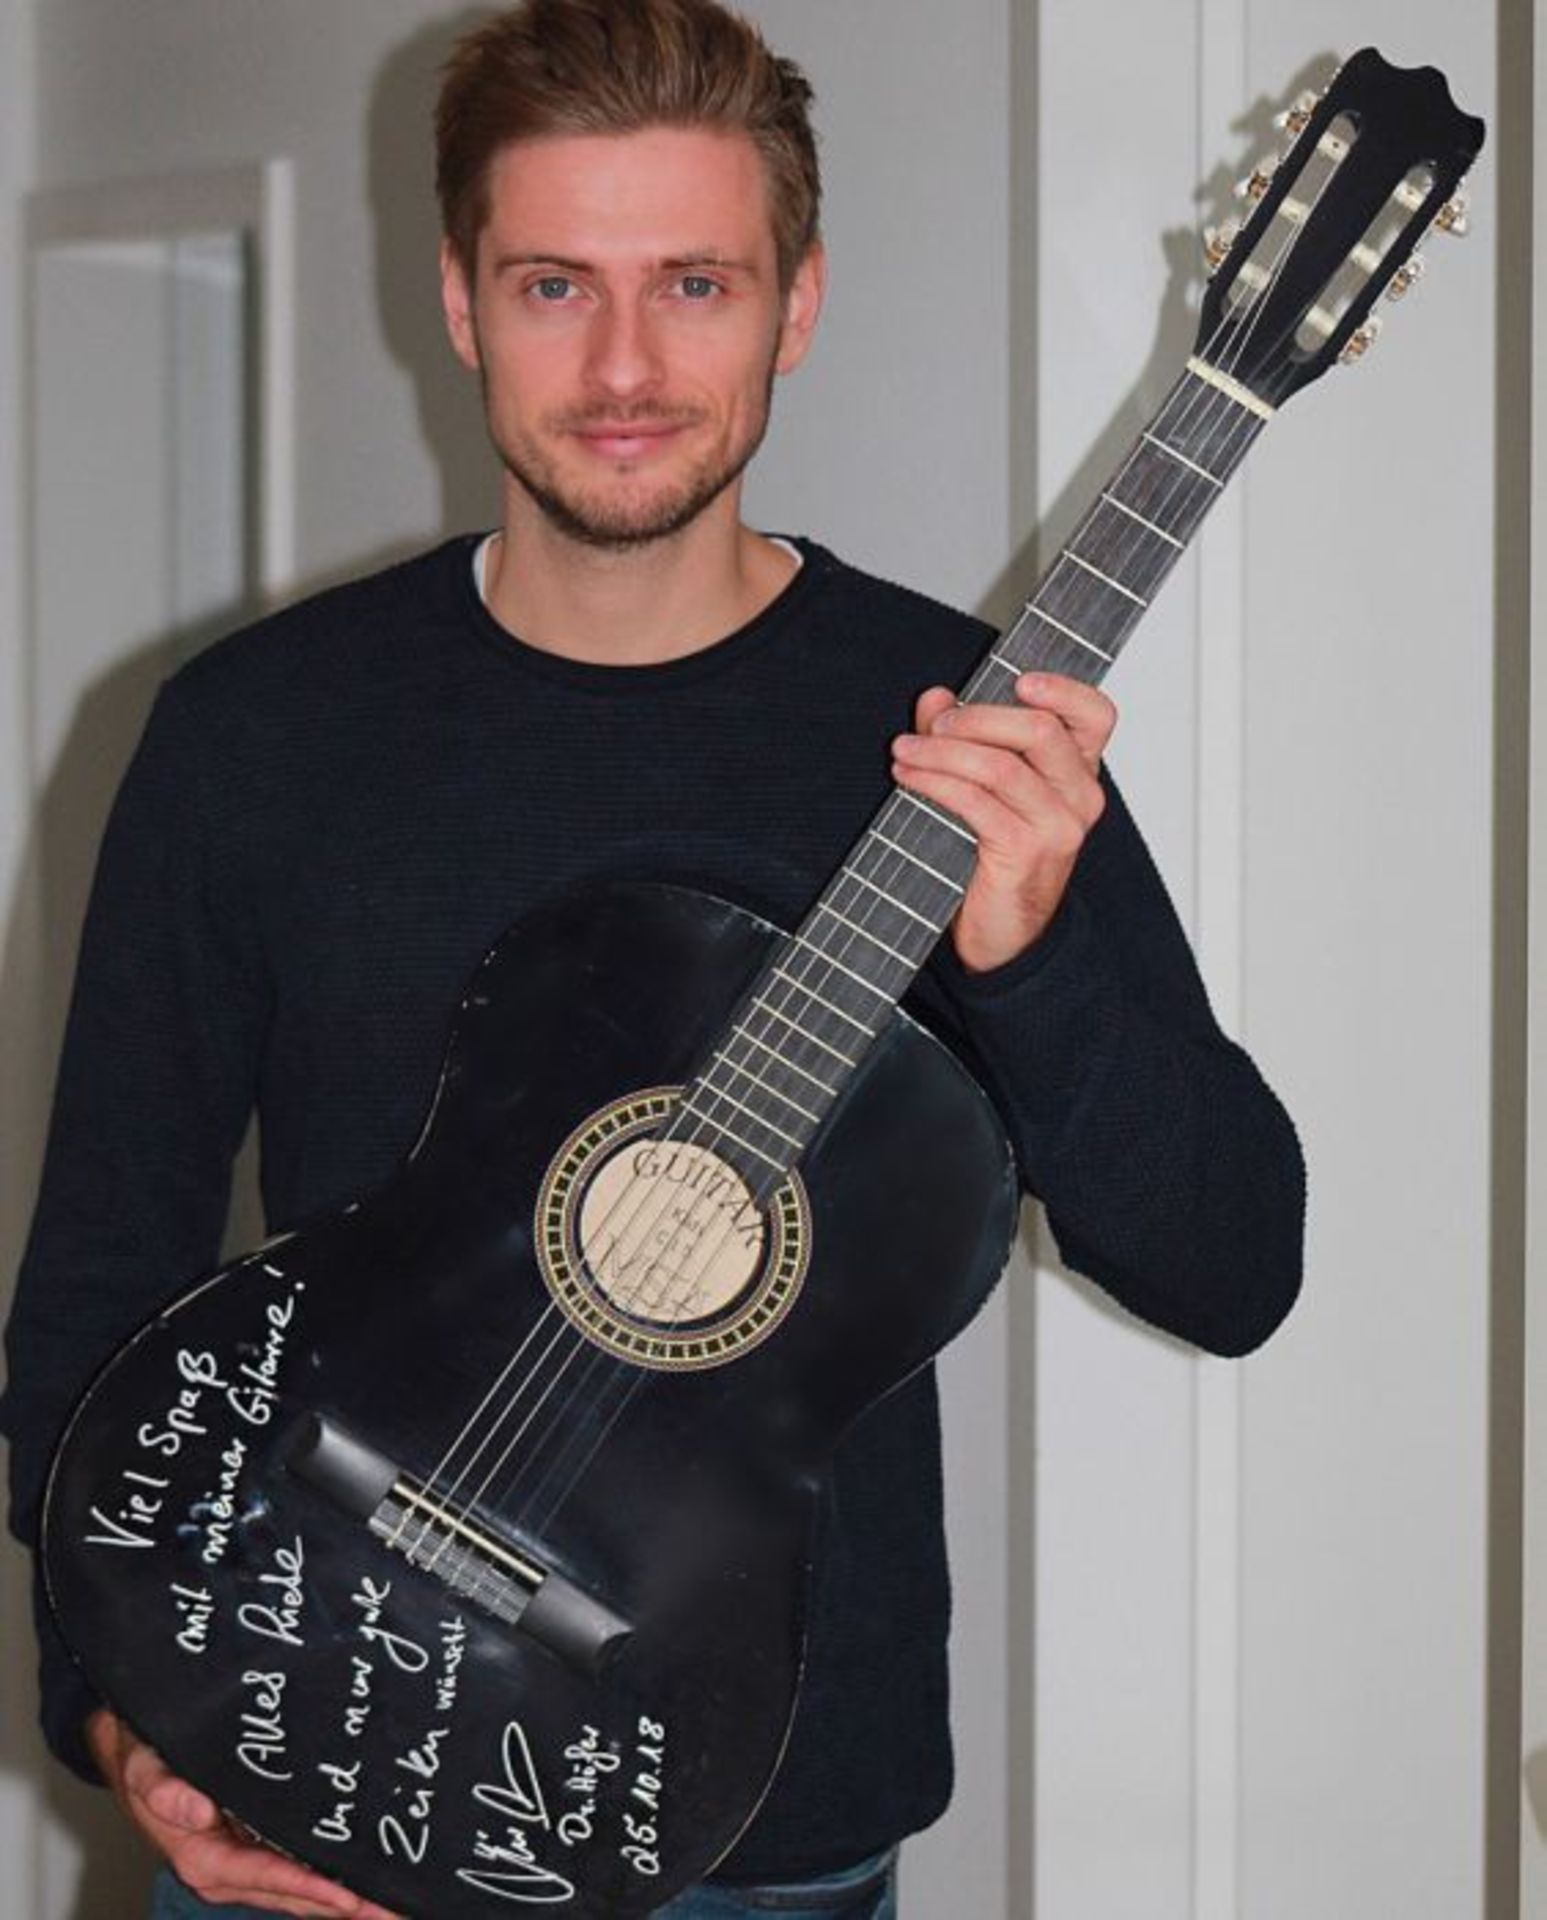 Signierte Gitarre von TV Star und Musiker Jörn Schlönvoigt - Charity Team LutzWir freuen uns, dass